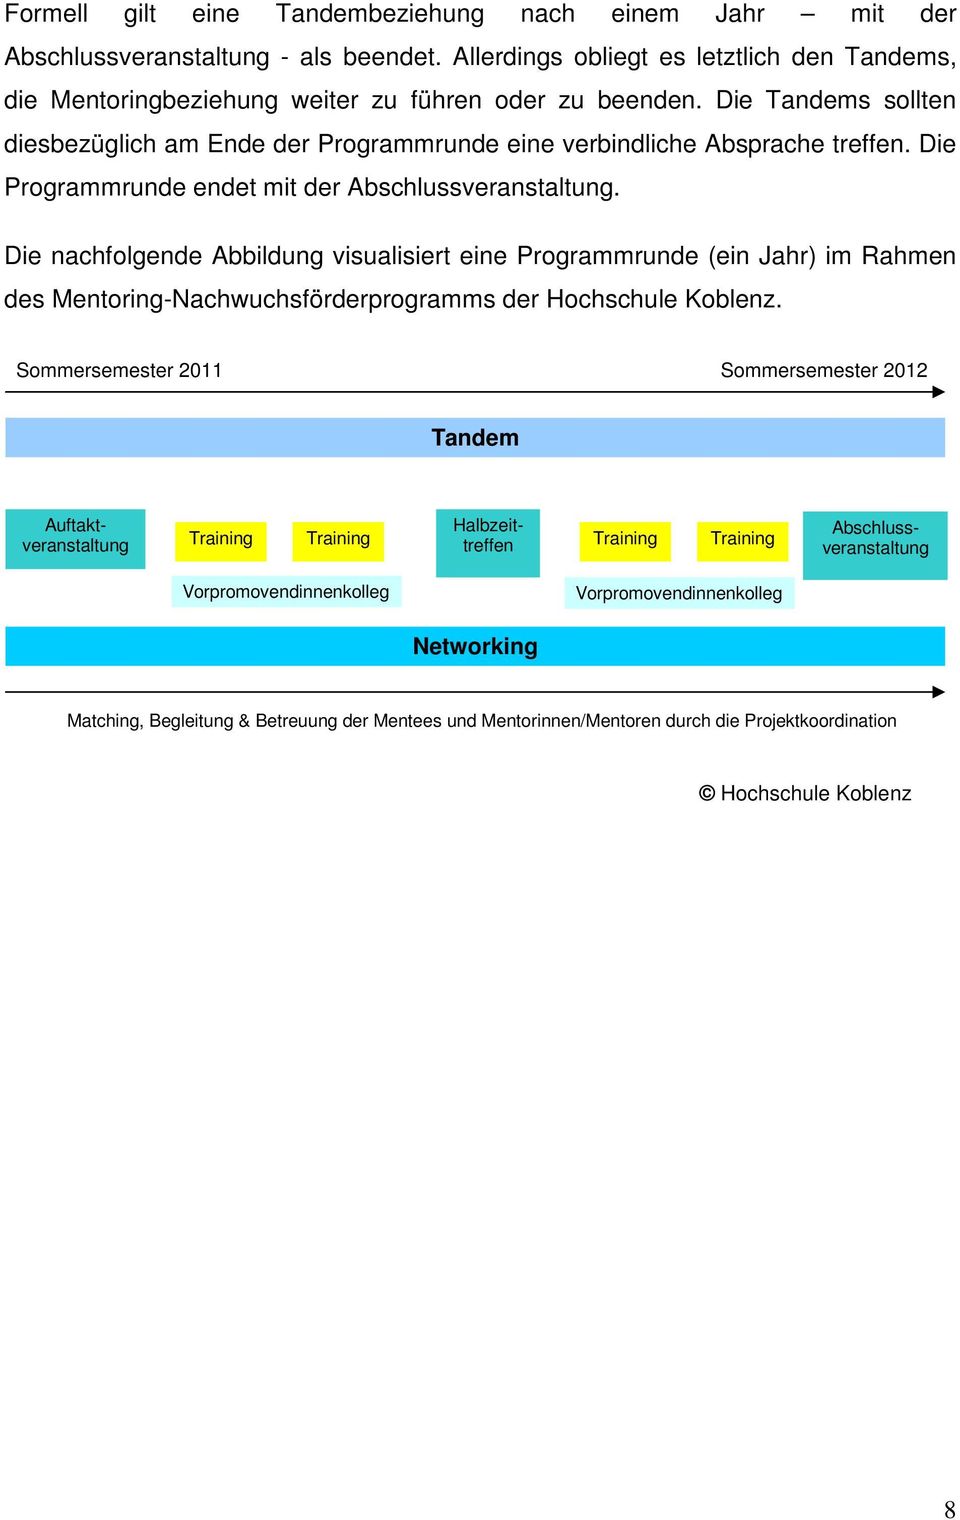 Die nachfolgende Abbildung visualisiert eine Programmrunde (ein Jahr) im Rahmen des Mentoring-Nachwuchsförderprogramms der Hochschule Koblenz.